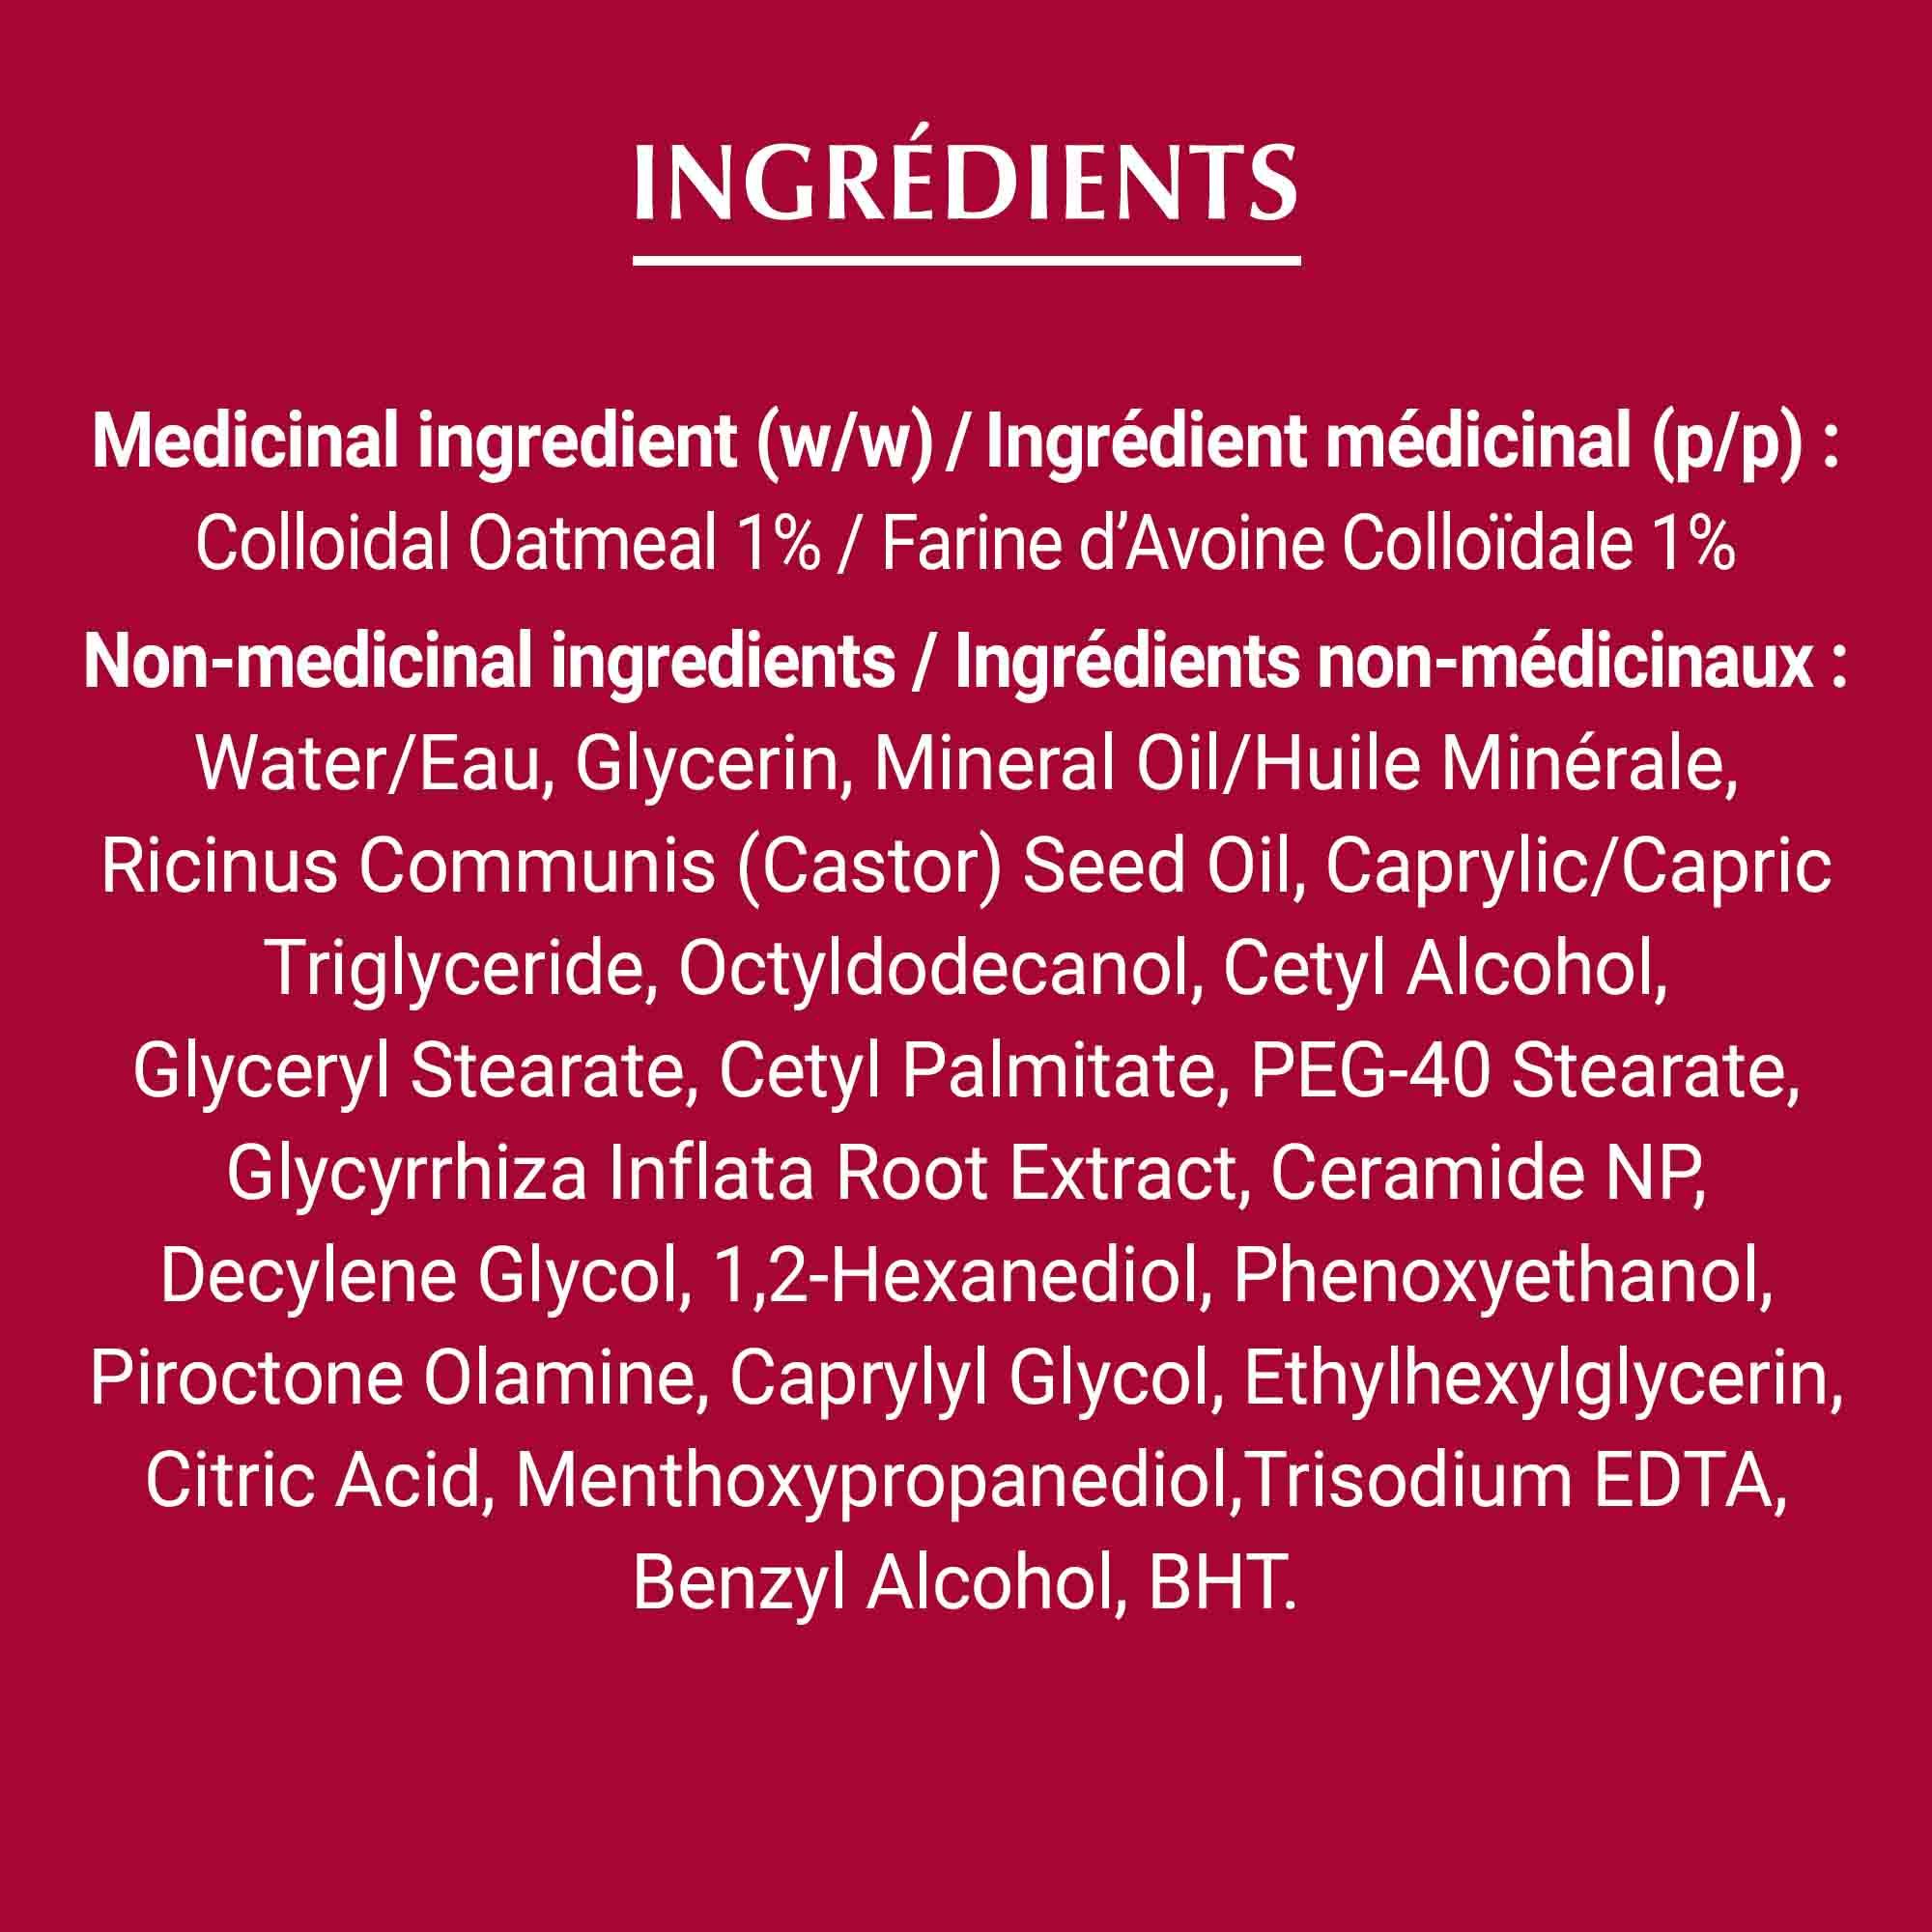 Liste des ingrédients de la crème Eucerin pour le traitement des poussées d'eczéma, en blanc sur fond rouge.